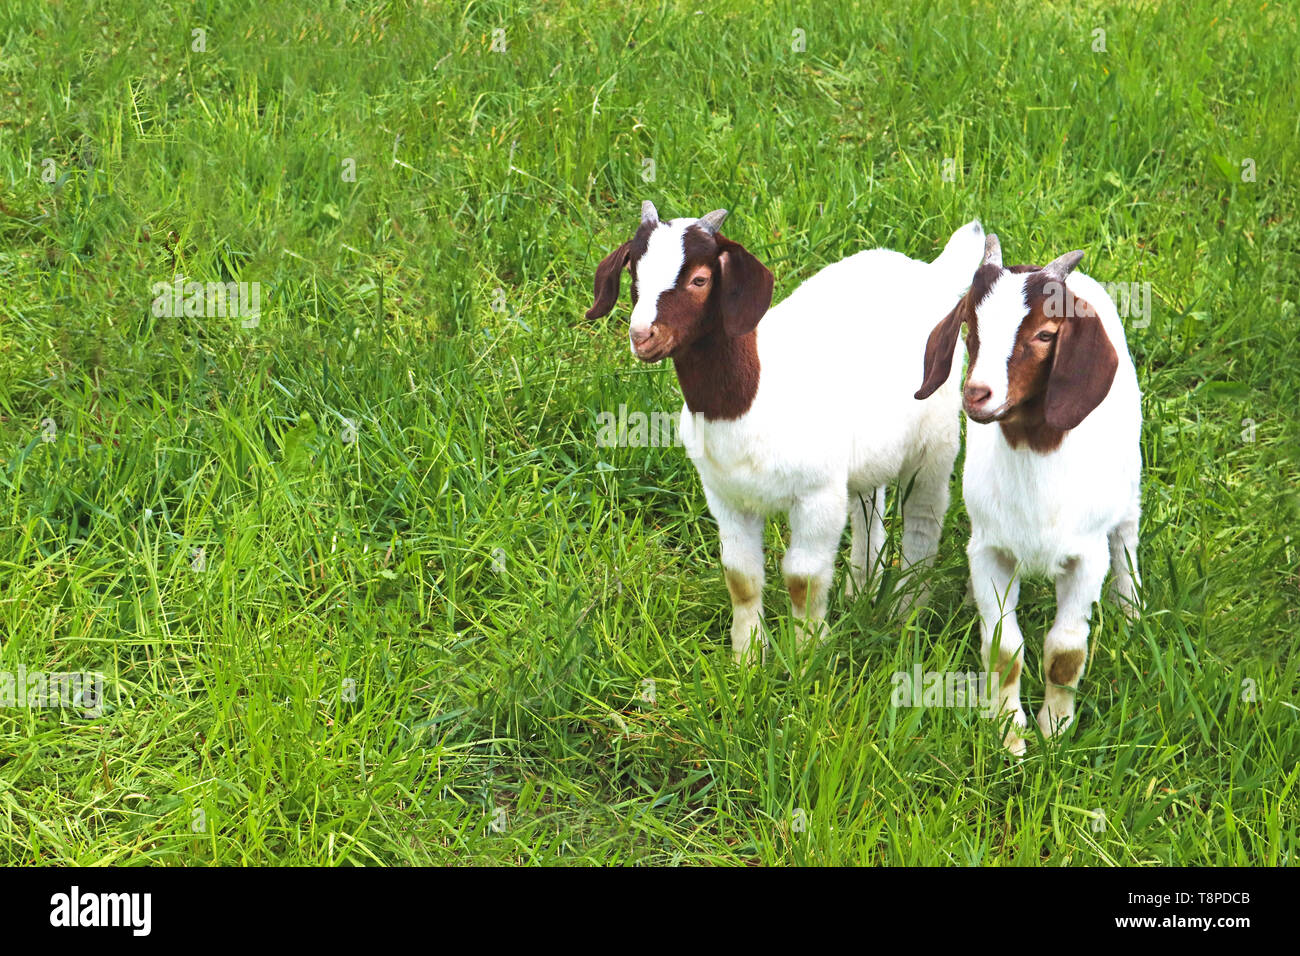 Zwei Boer kid Ziegen Seite an Seite auf einer grünen Weide Stockfoto